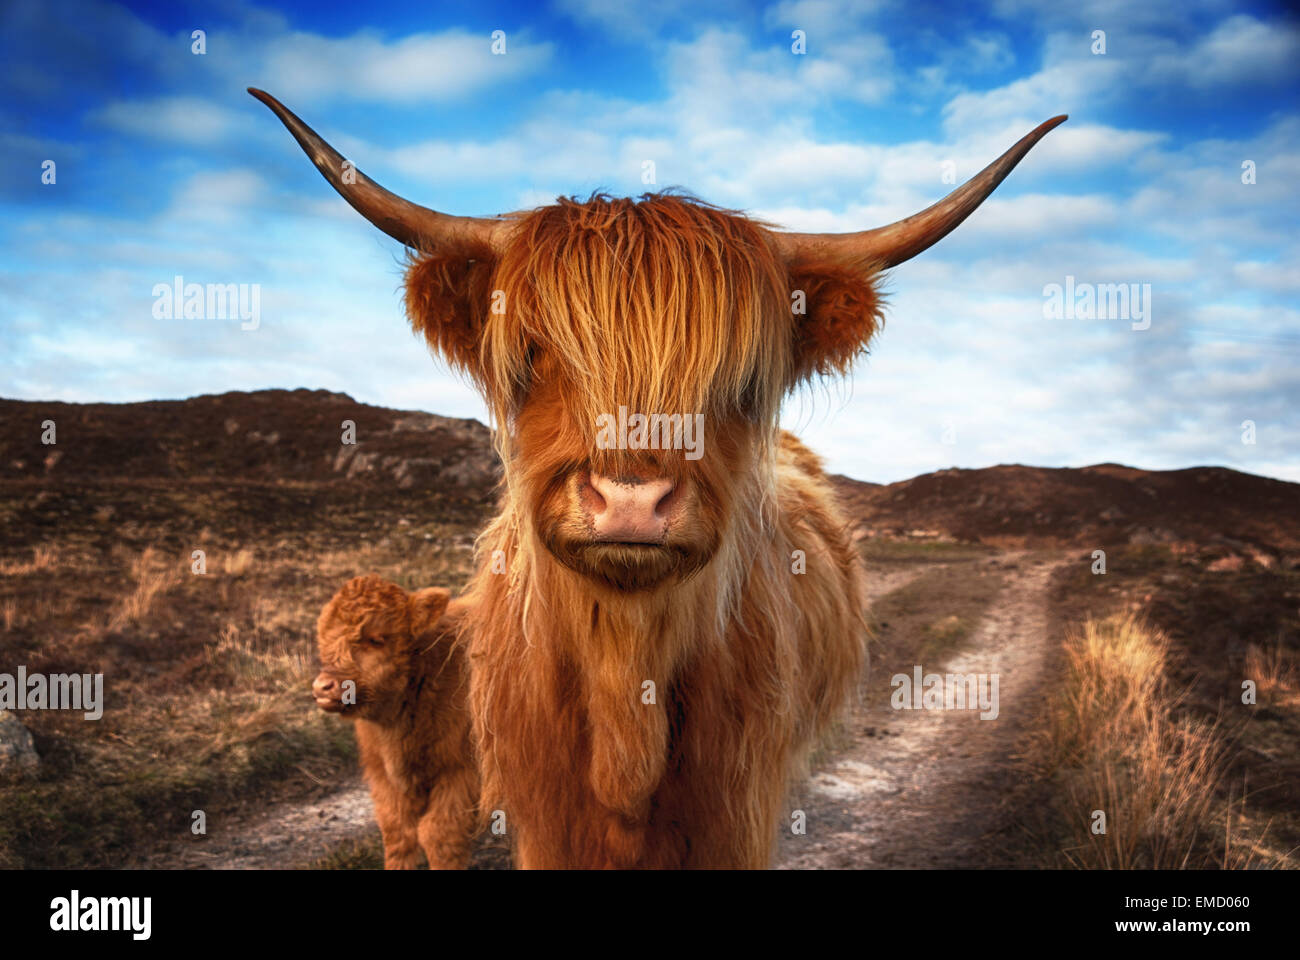 Royaume-uni, Ecosse, Highland cattle avec veau à laide Banque D'Images